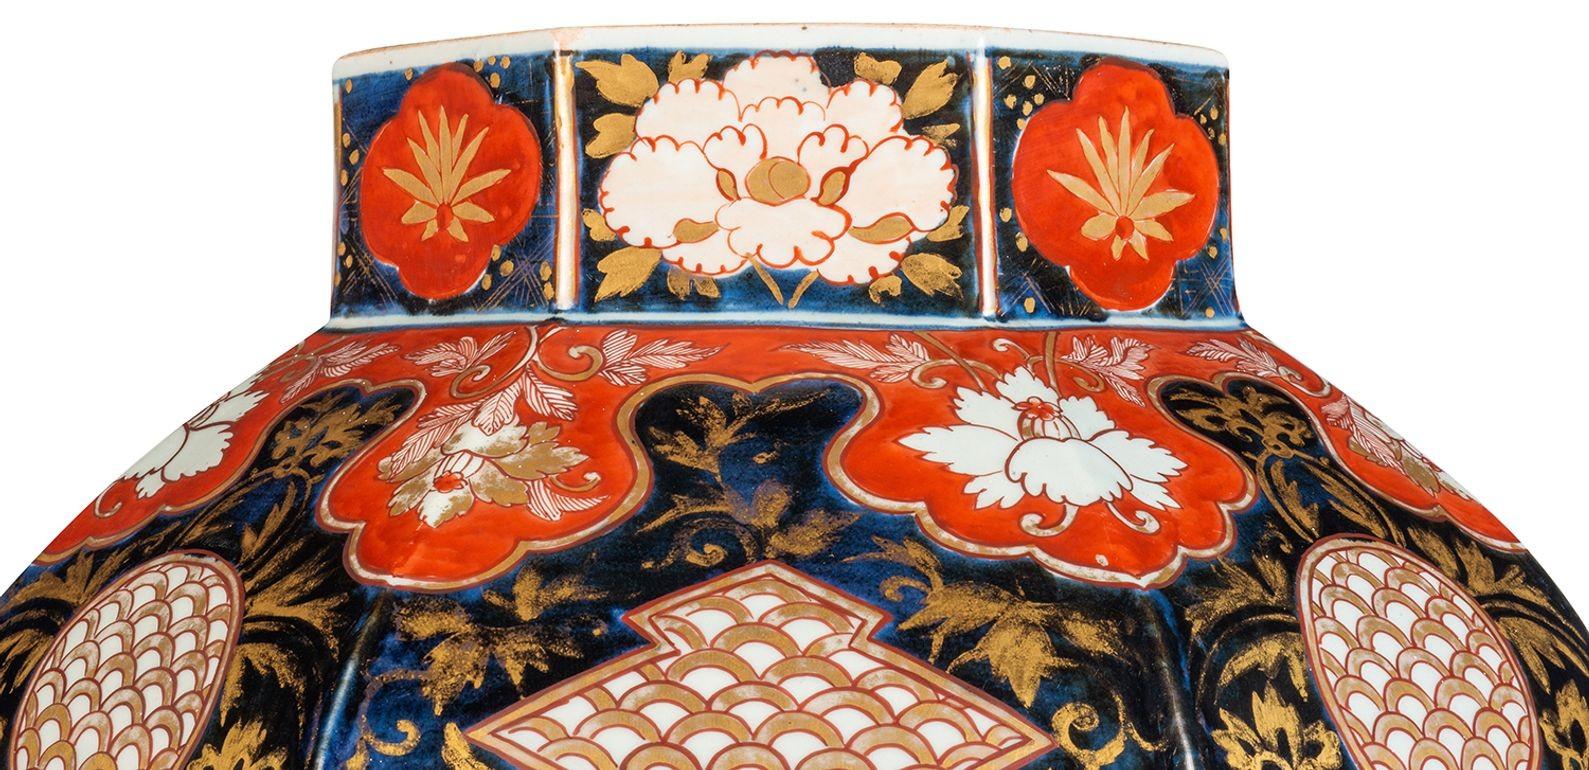 Eine japanische Imari-Vase von sehr guter Qualität aus dem 18. Jahrhundert, mit wunderschönem vergoldetem Blattdekor, klassischen Motiven, exotischen Blumen und Vögeln.
Wir können sie bei Bedarf in eine Lampe umwandeln.

62255 TNKZZ